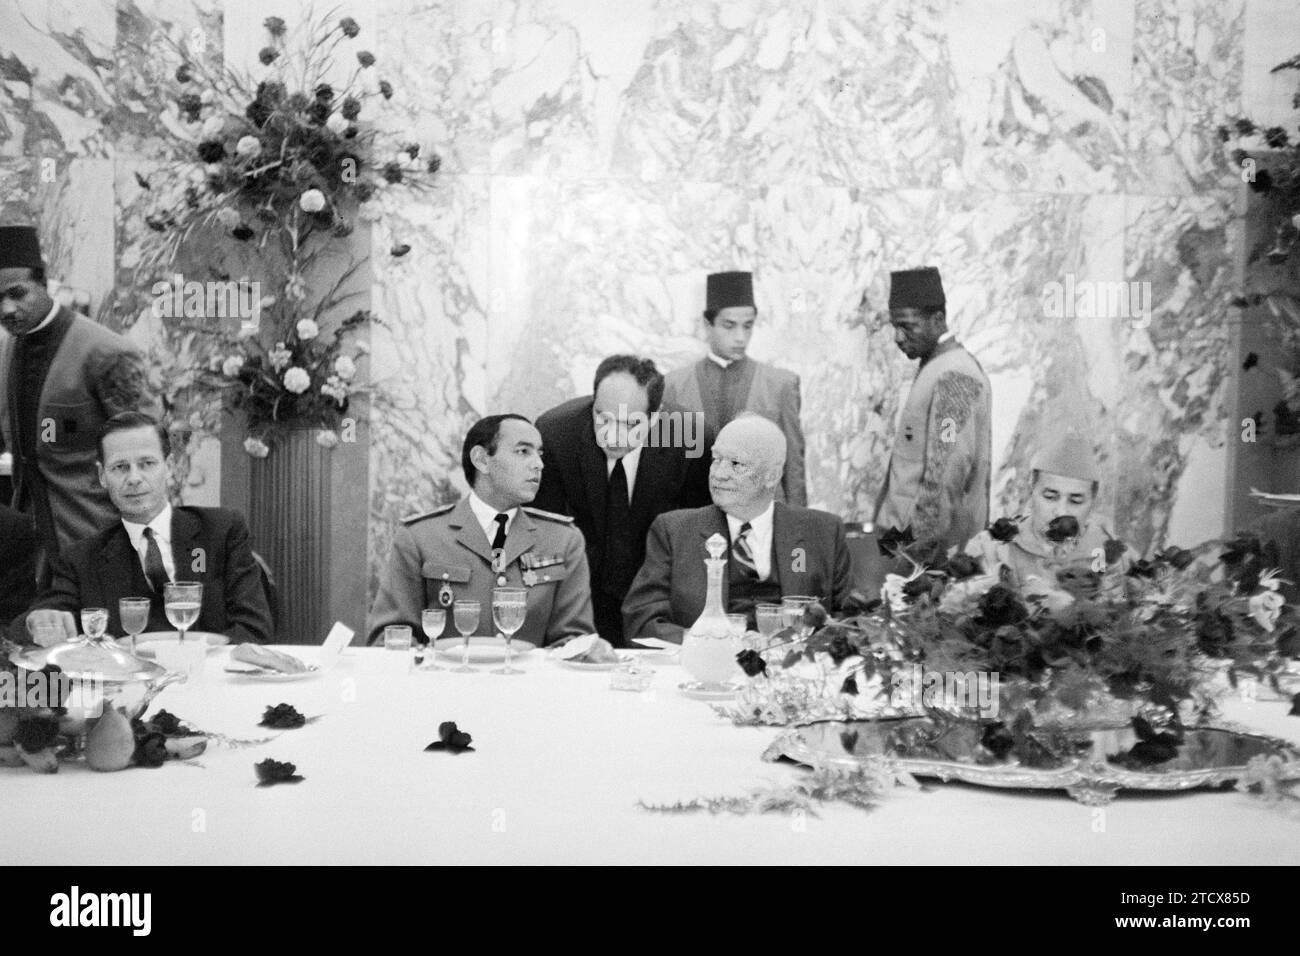 Le président américain Eisenhower au déjeuner donné en son honneur par Mohammed V du Maroc (à droite d'Eisenhower), Casablanca, Maroc, Thomas J. O'Halloran, U.S. News & World Report Magazine Photography Collection, 22 décembre 1959 Banque D'Images